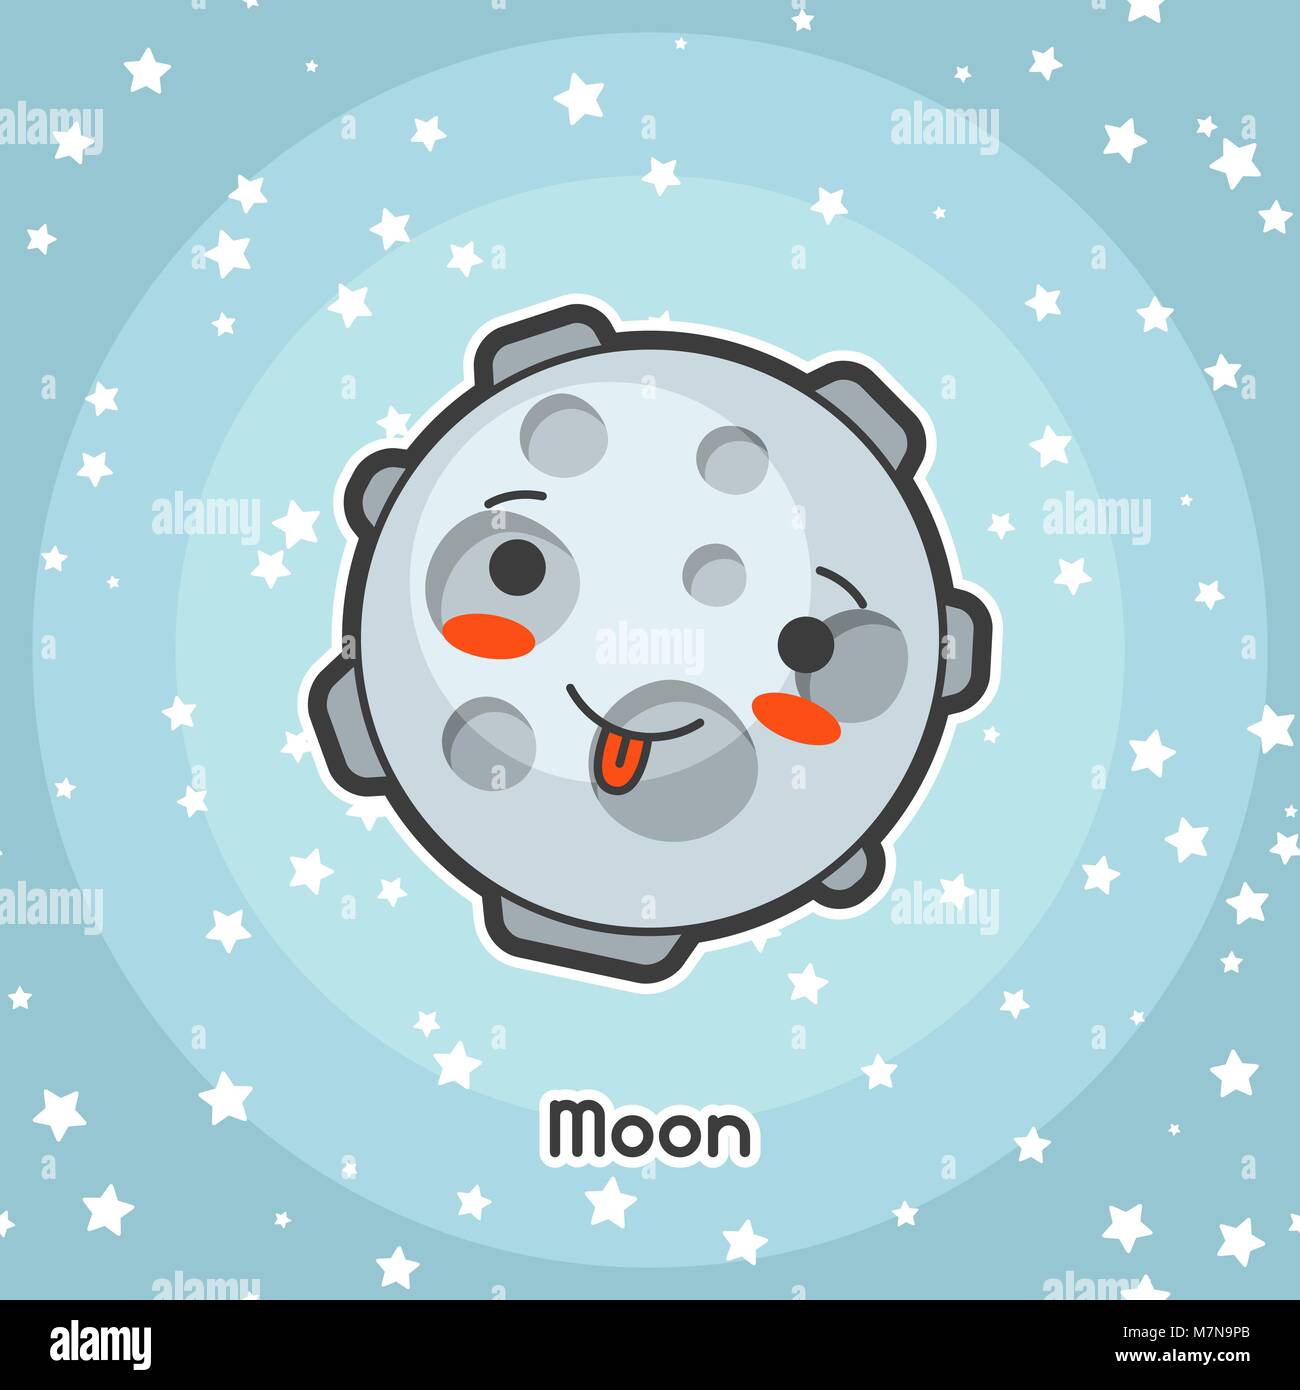 Kawaii tarjeta de espacio. Doodle con bonita expresión facial. Ilustración de cartoon luna en cielo estrellado. Ilustración del Vector